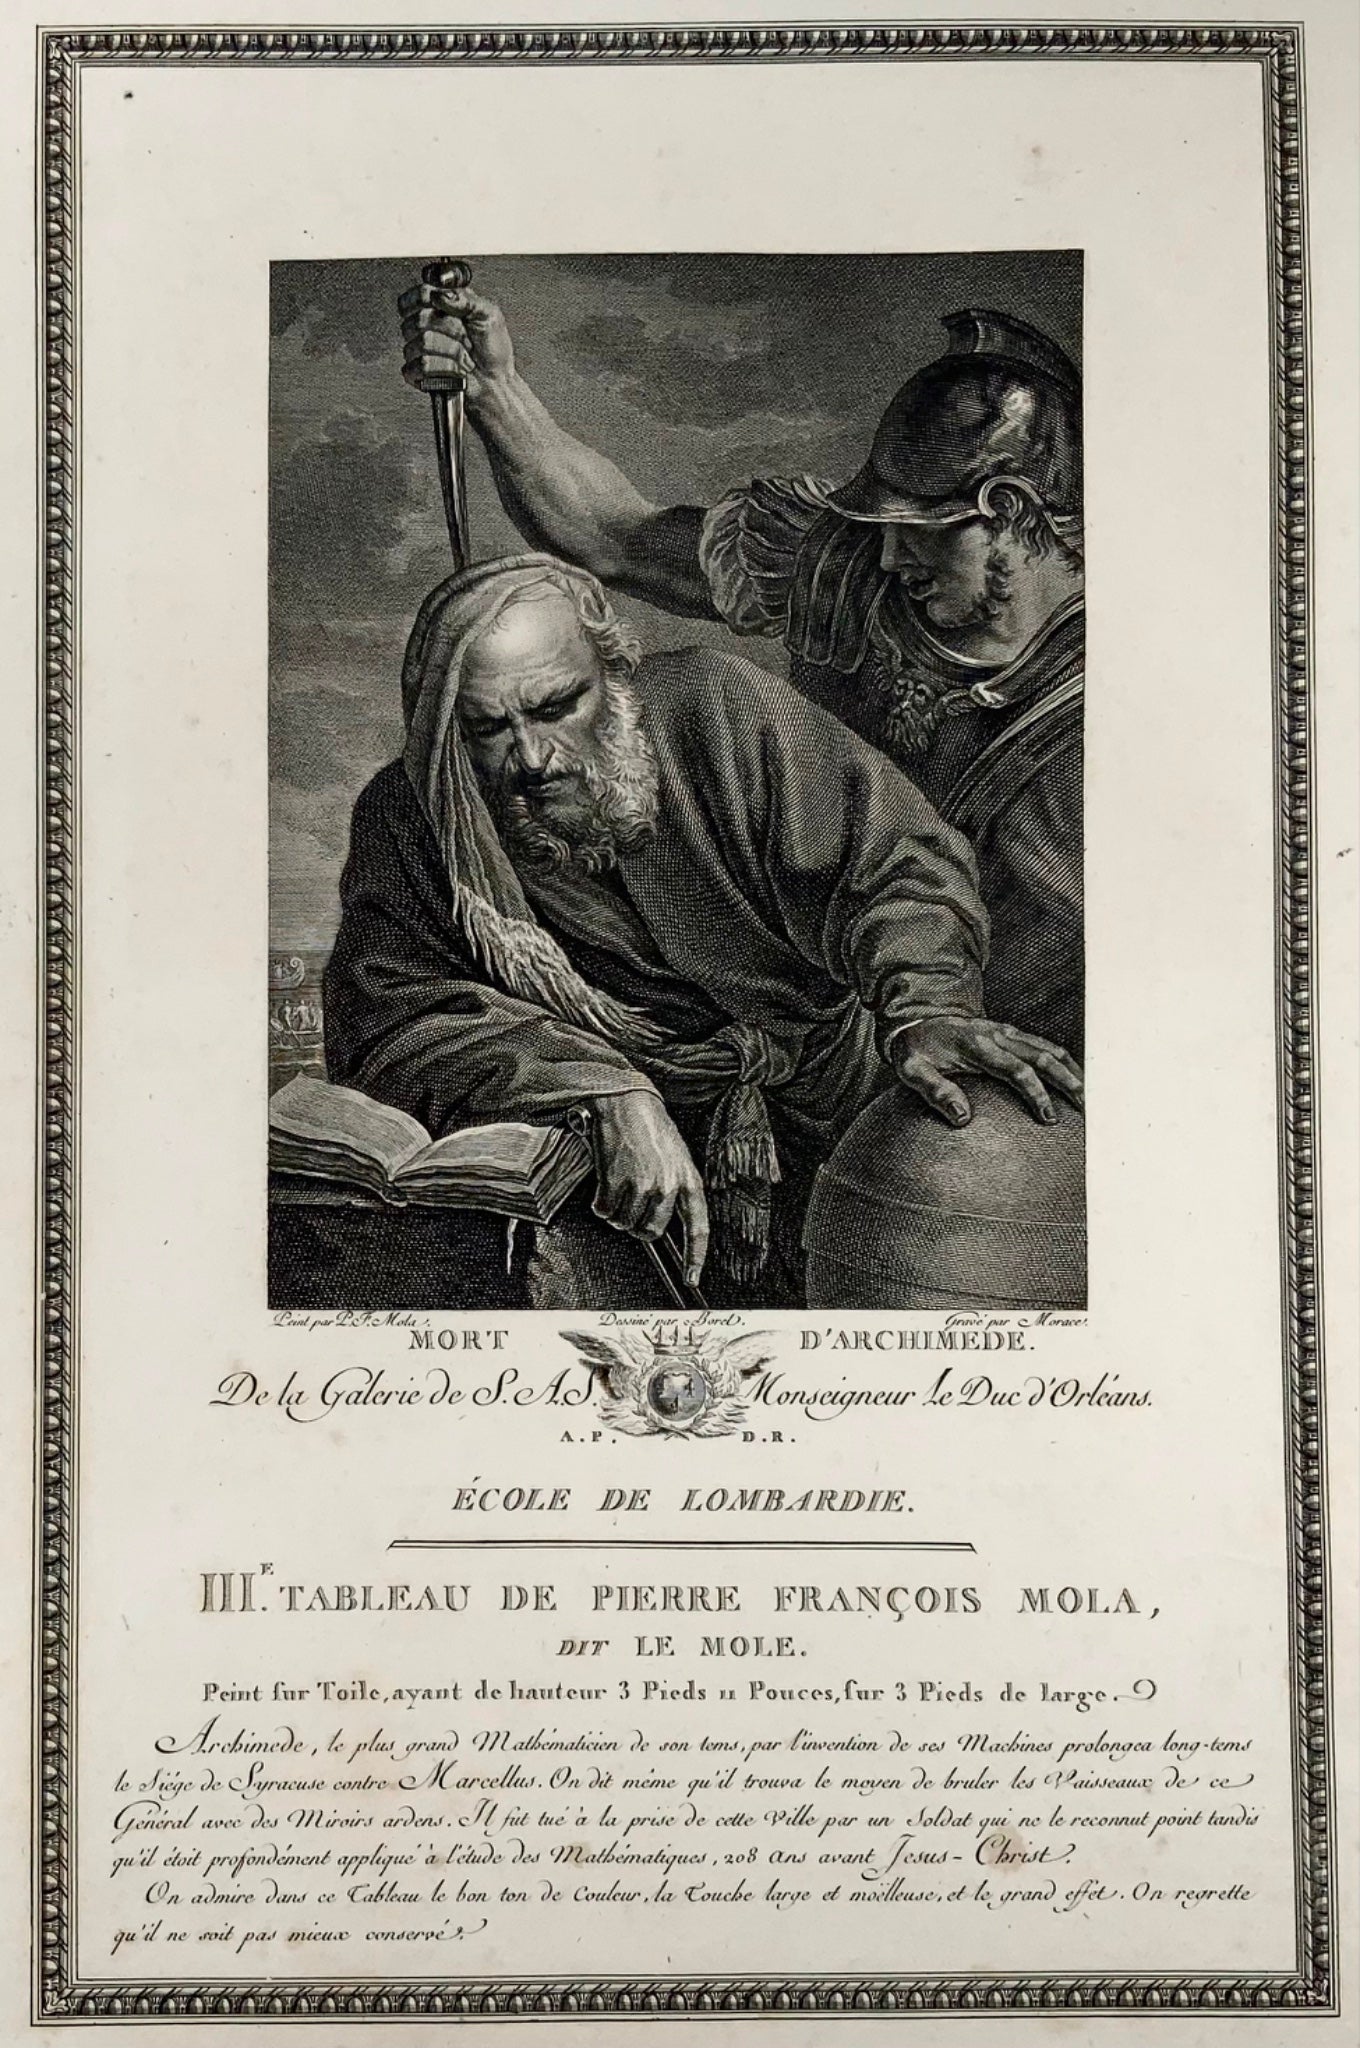 1786 Death of Archimedes, mathematics, Pier Francesco Mola, 53cm engraving, portrait